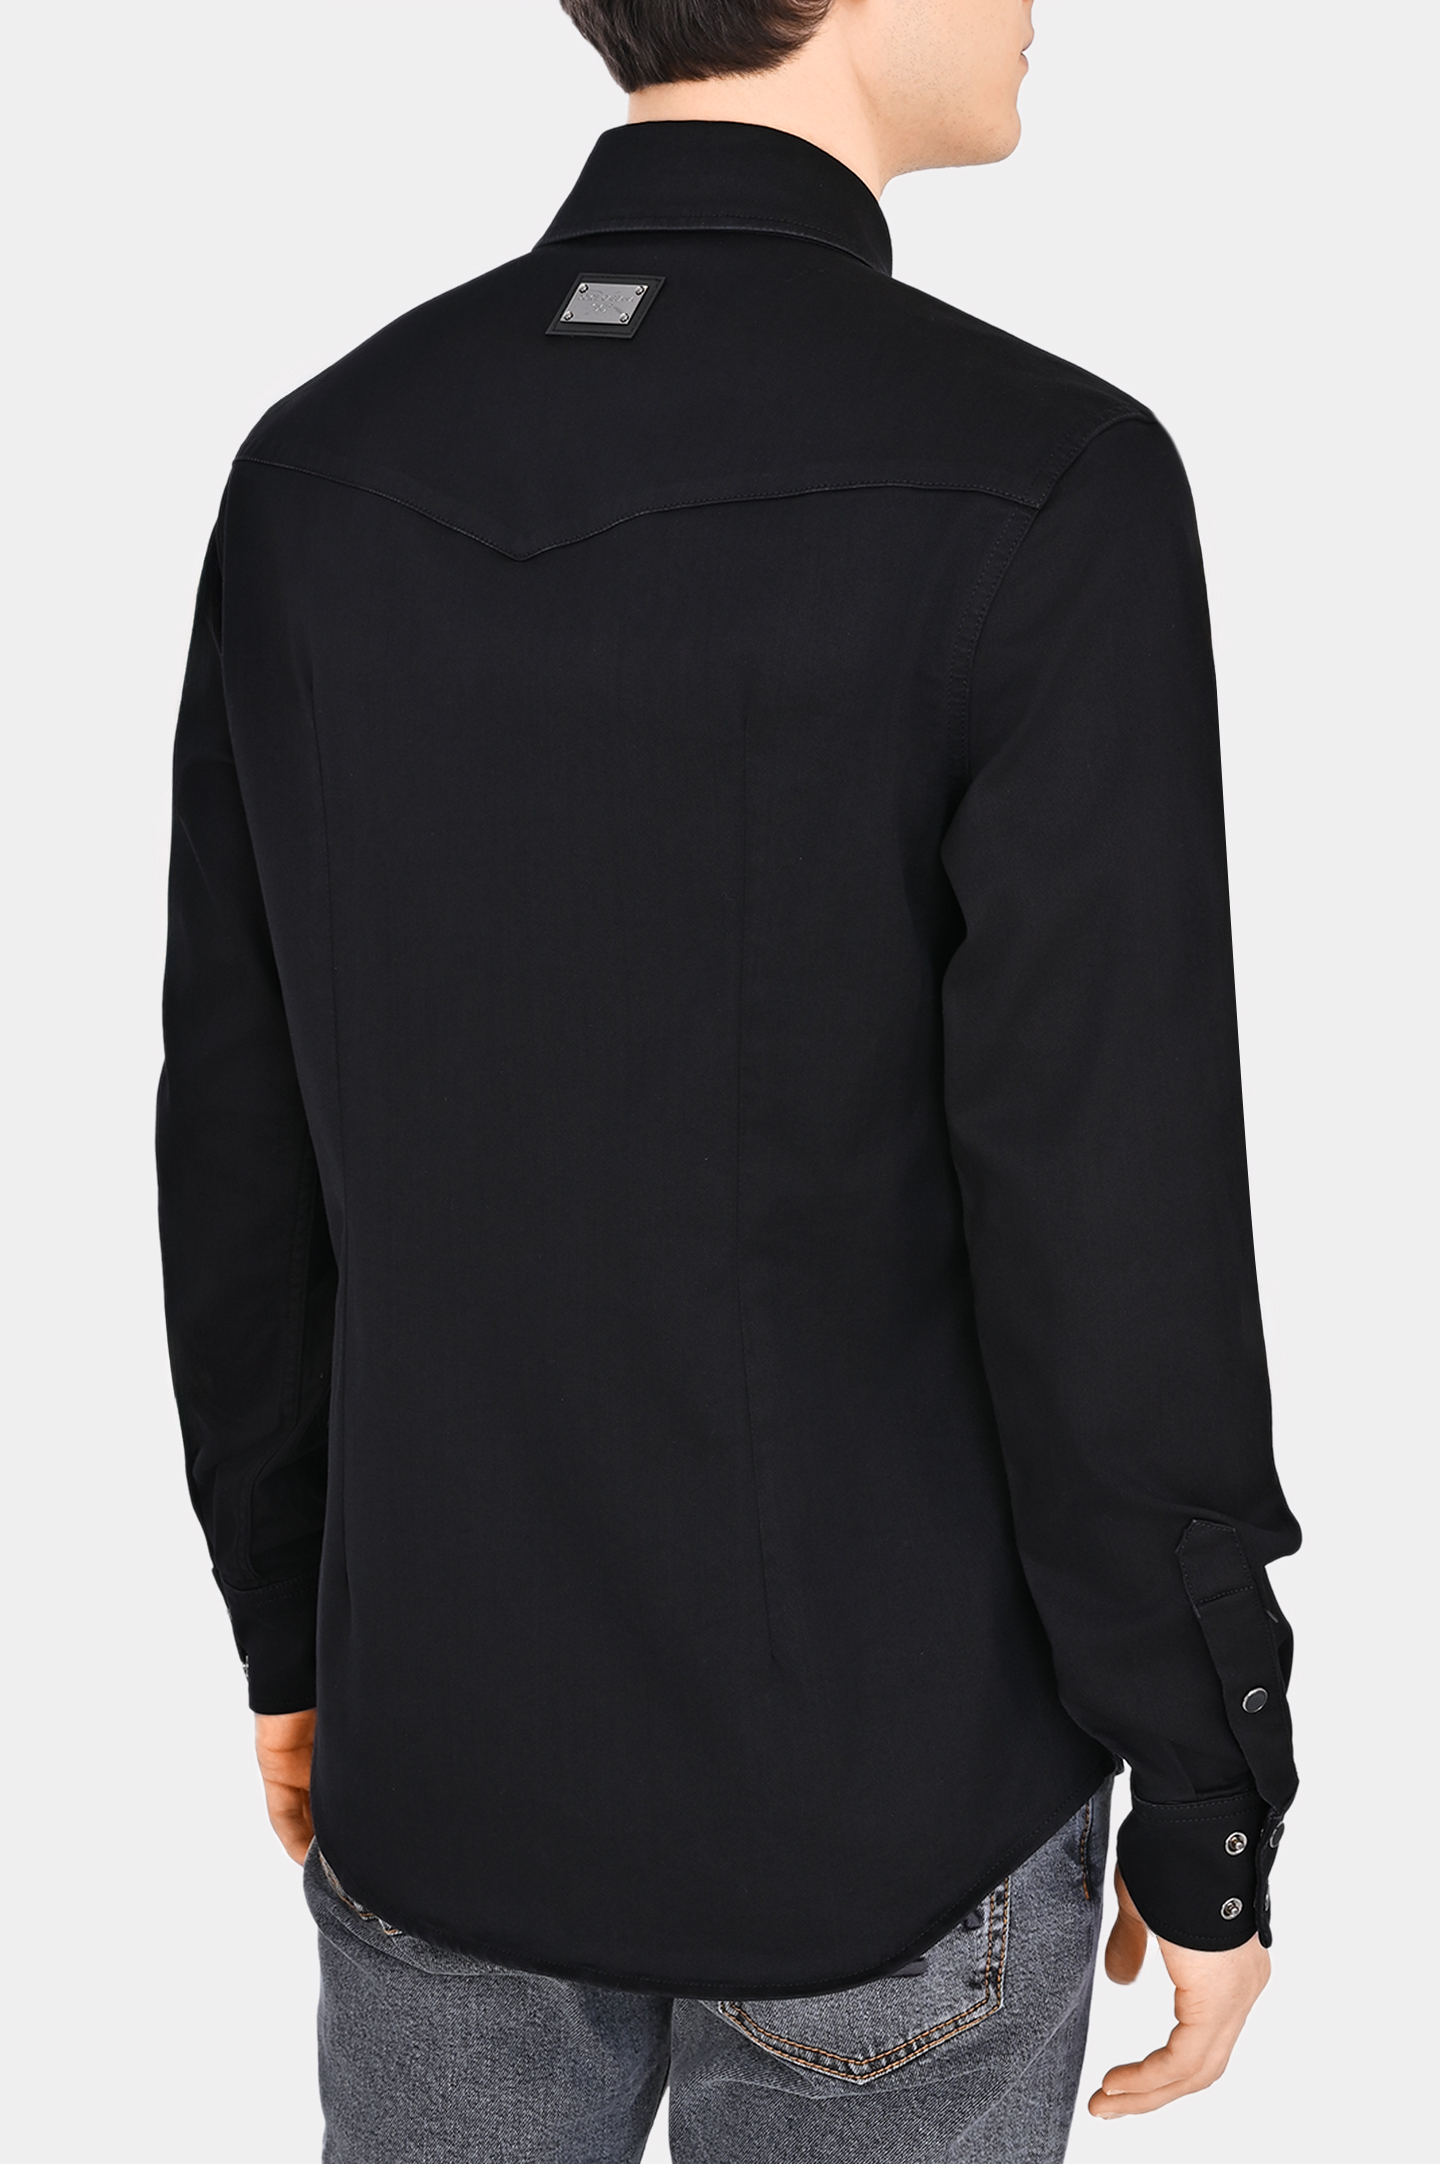 Рубашка DOLCE & GABBANA G5JC8D G8GW6, цвет: Черный, Мужской